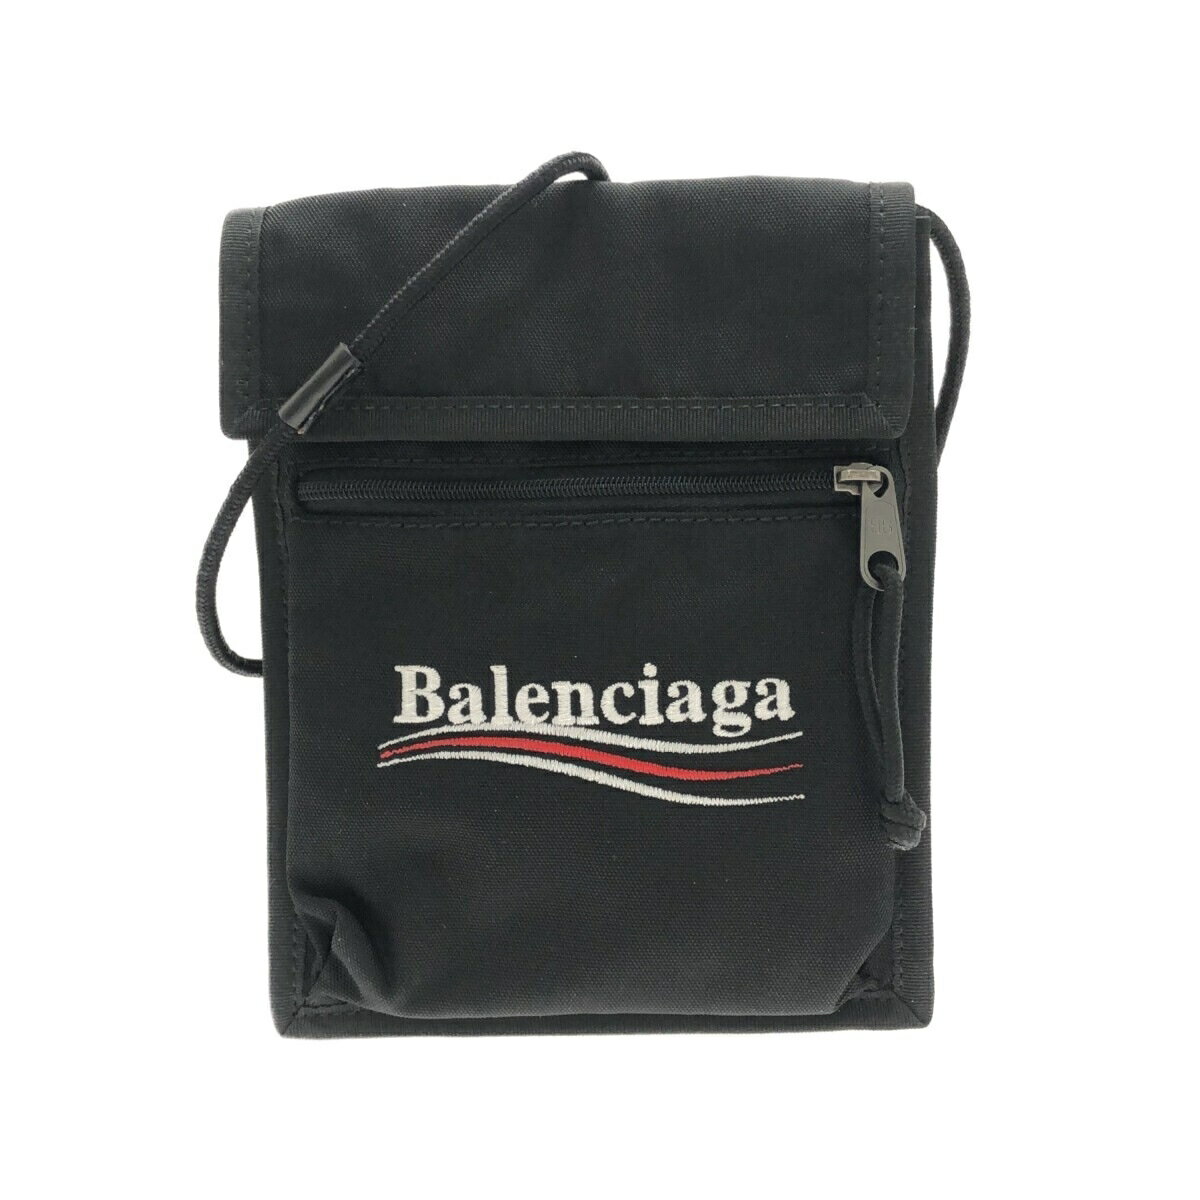 BALENCIAGA(バレンシアガ) エクスプローラー ポーチ ストラップ ショルダーバッグ 黒×白×レッド ナイロン